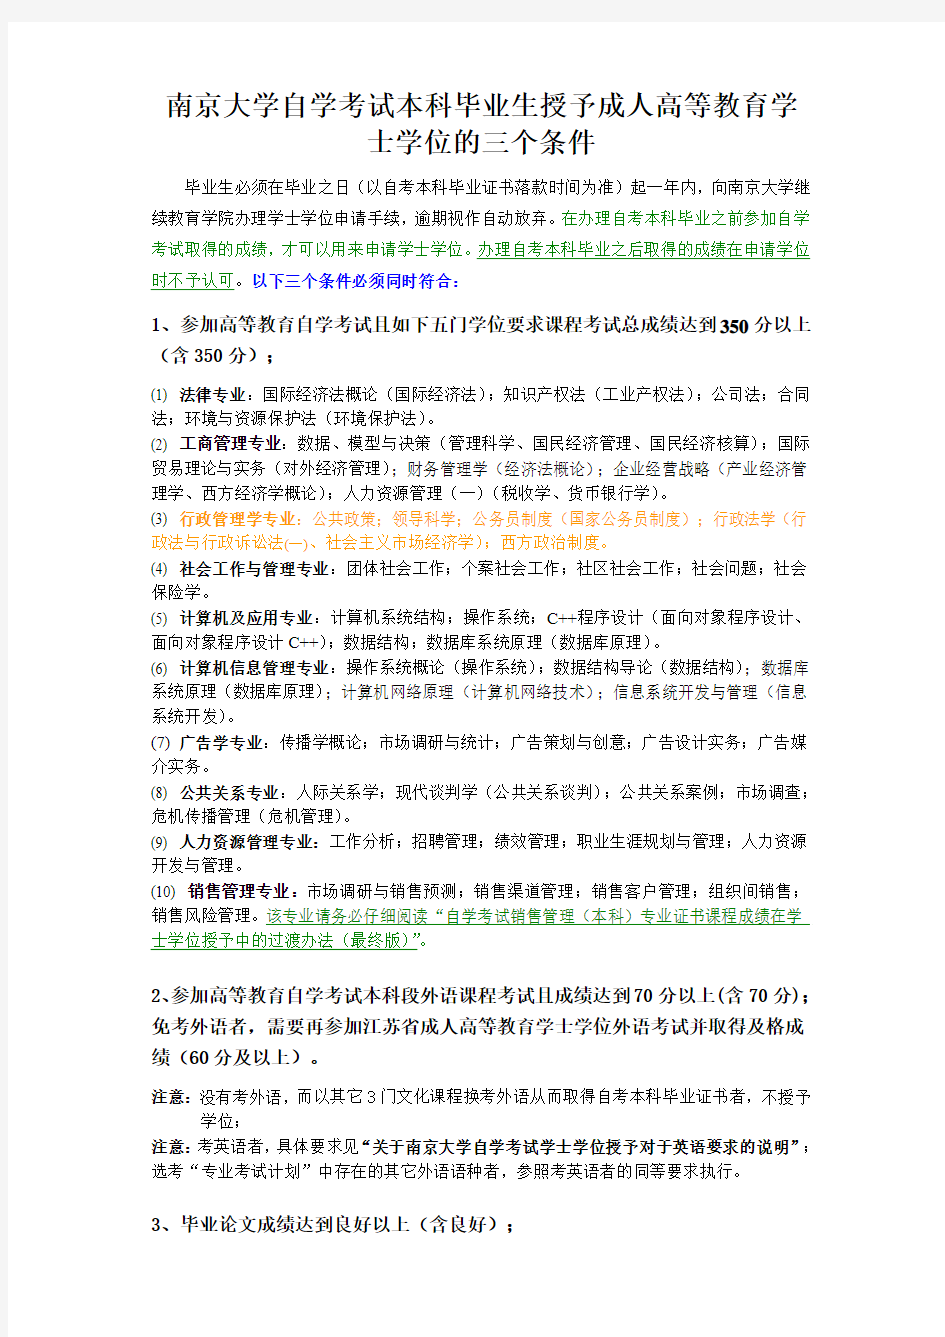 南京大学自学考试本科毕业生授予成人高等教育学士学位的三个条件